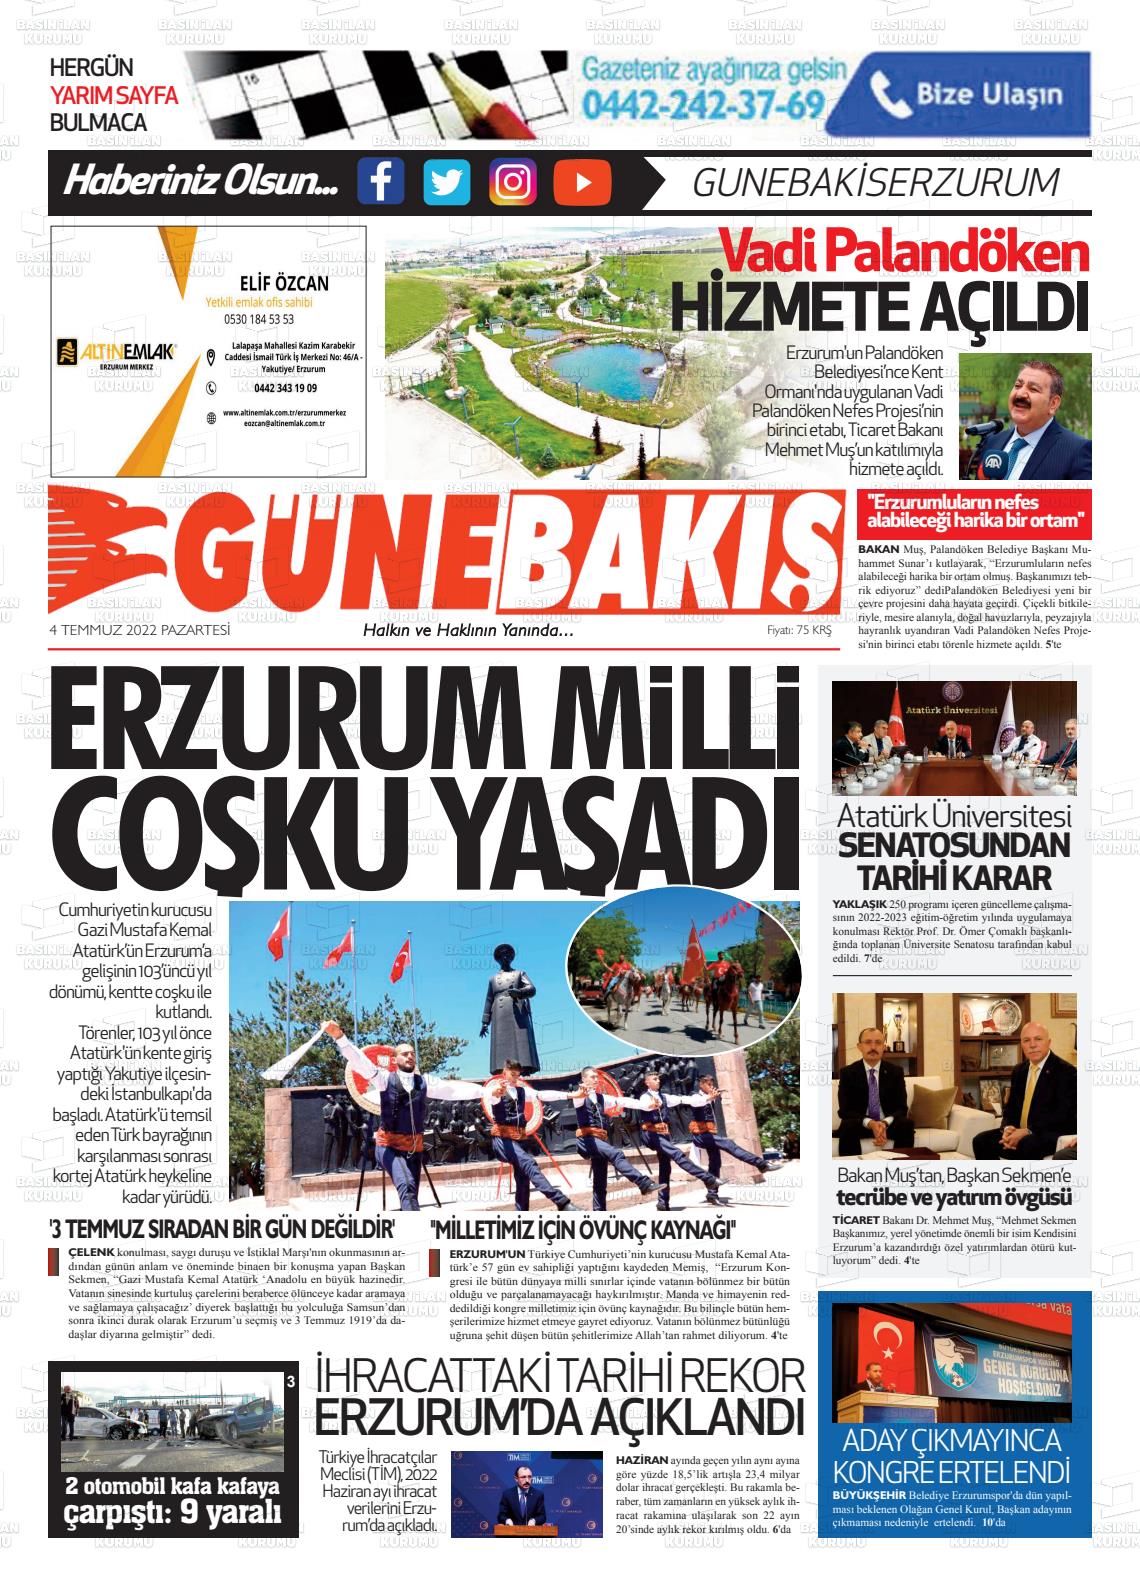 04 Temmuz 2022 Erzurum Günebakış Gazete Manşeti